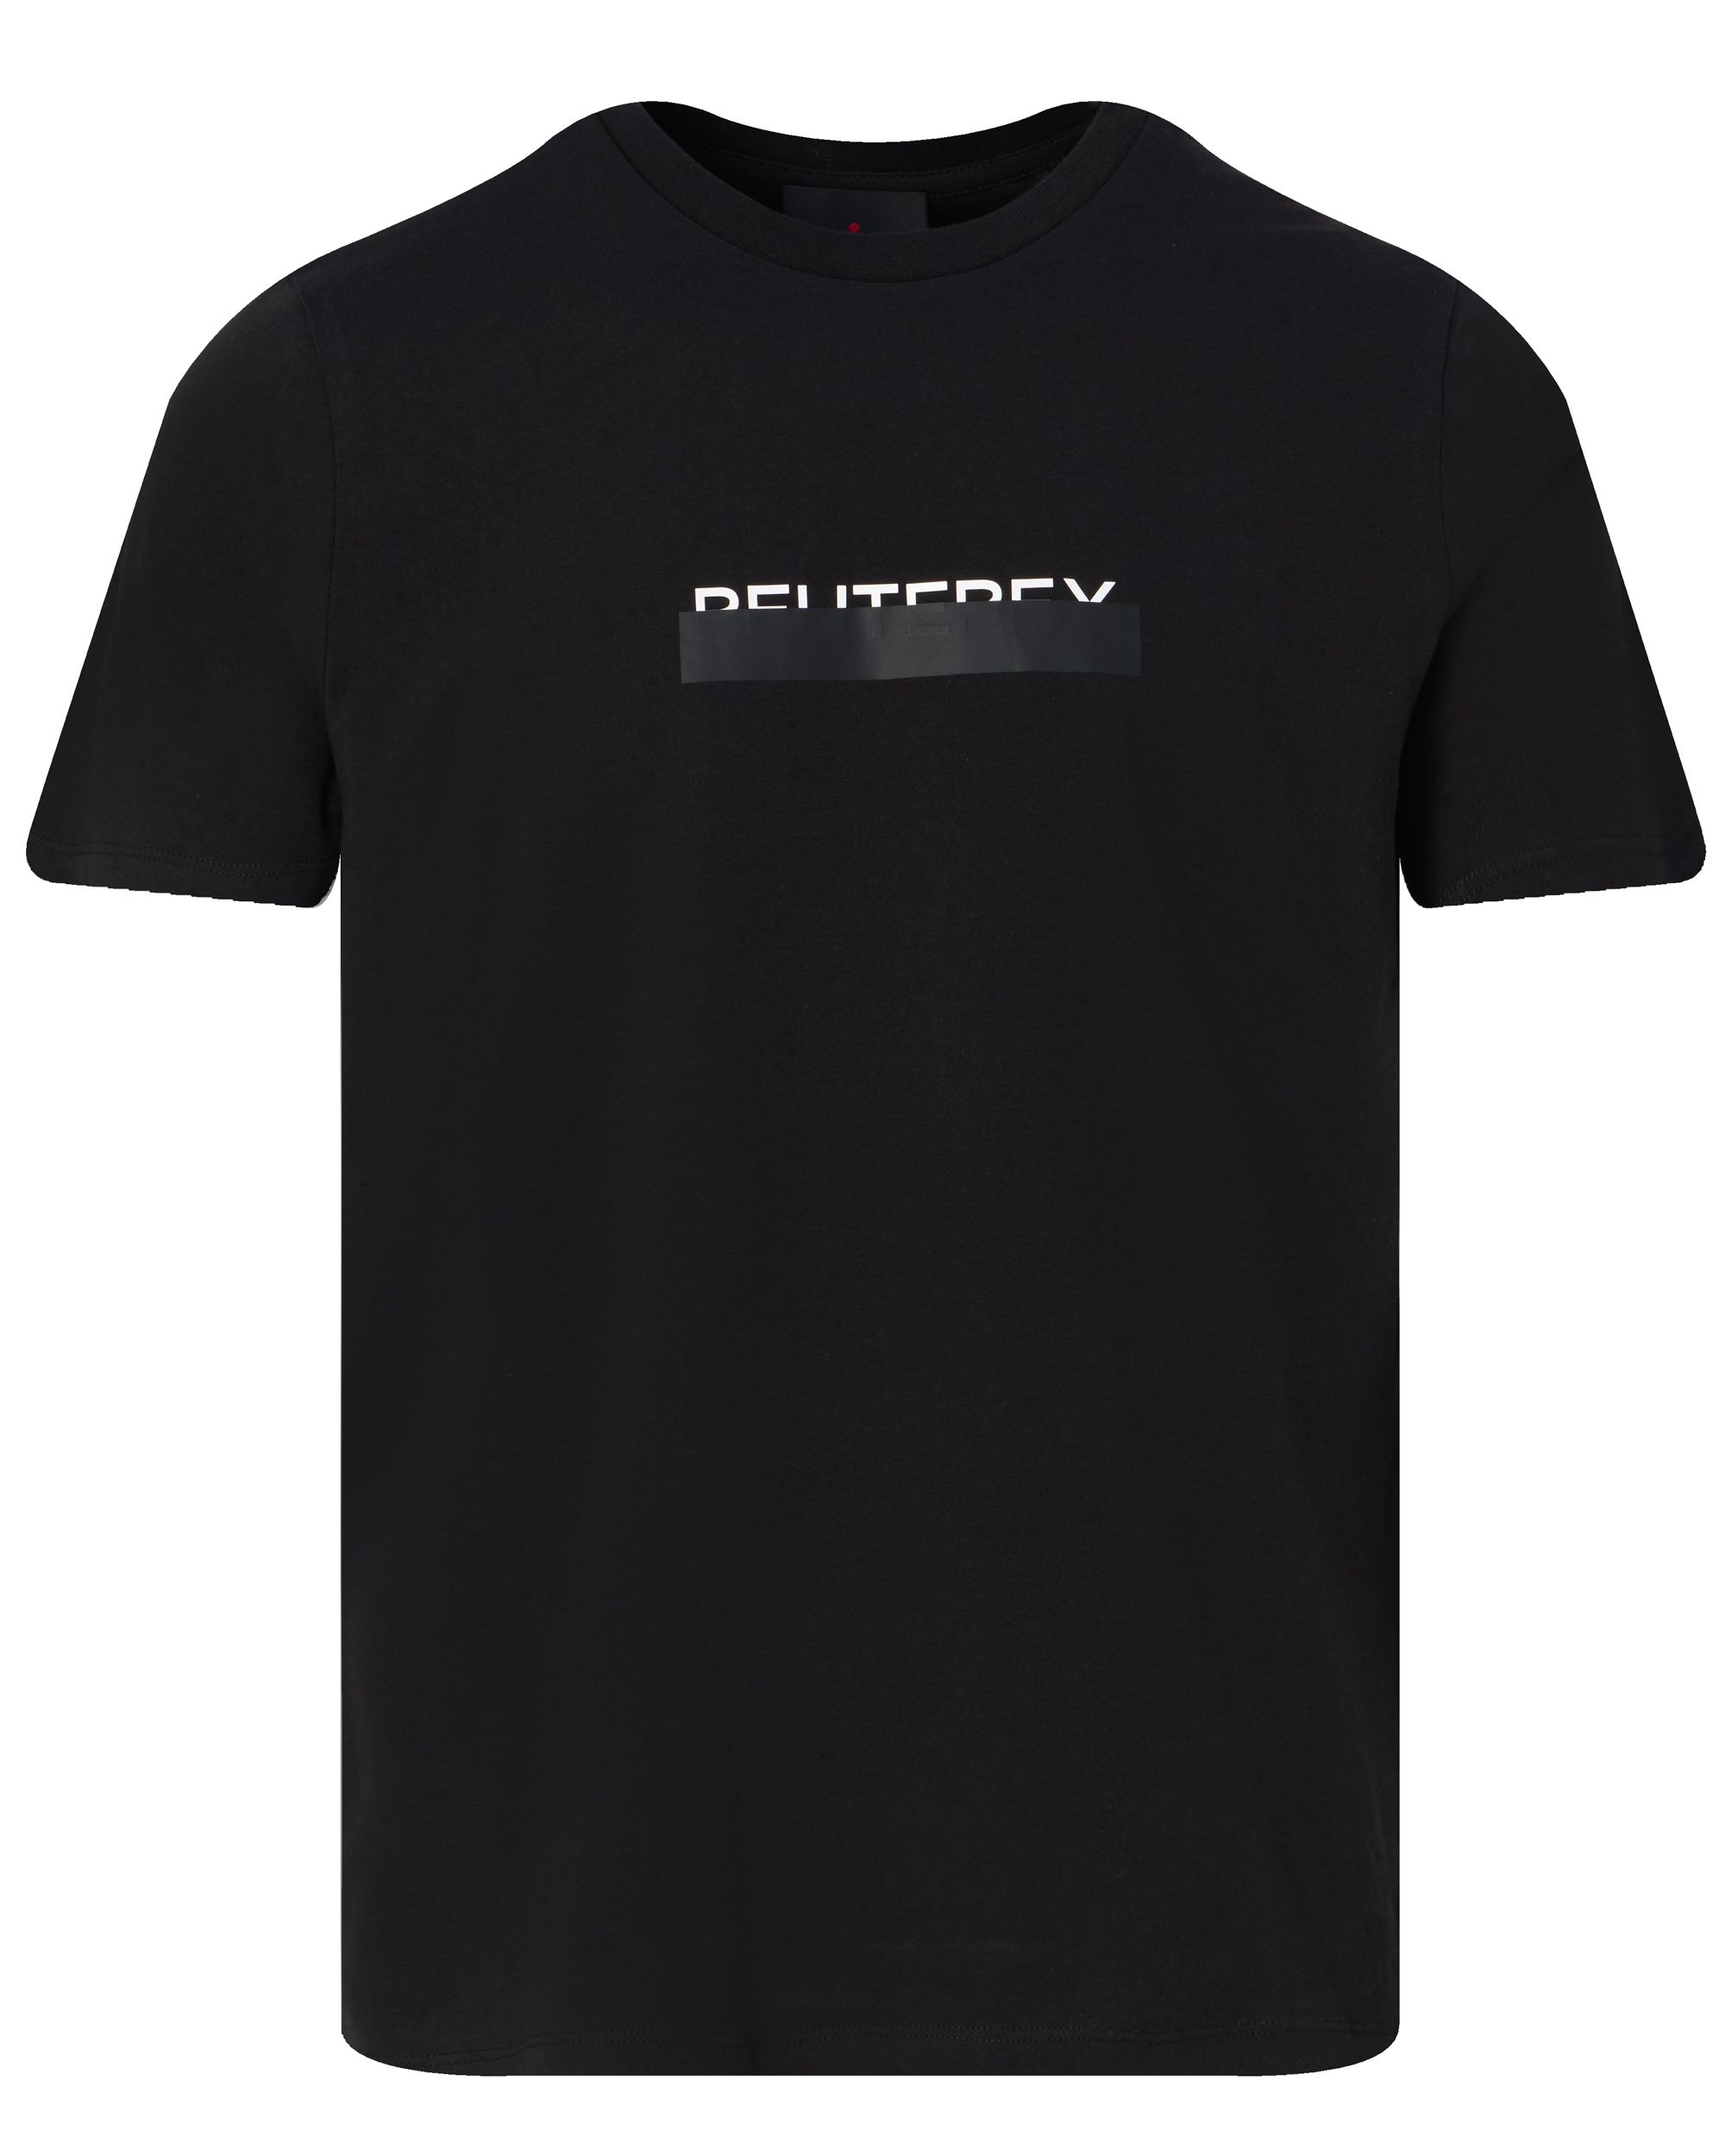 Peuterey Manderly T-shirt KM Zwart 094273-001-L